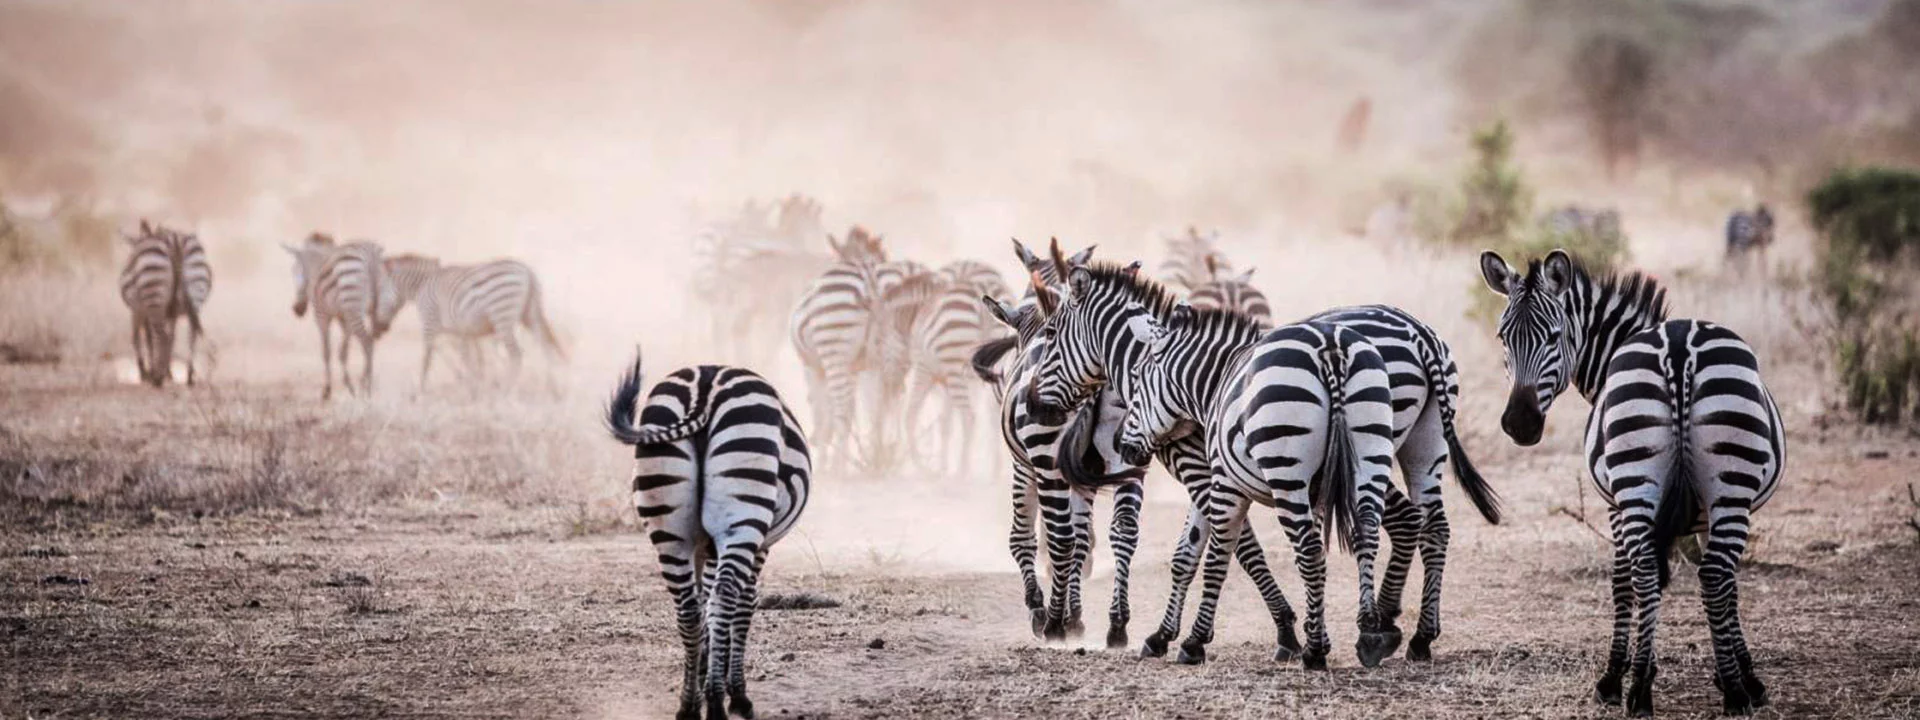 One Day Safari Trips in Tanzania